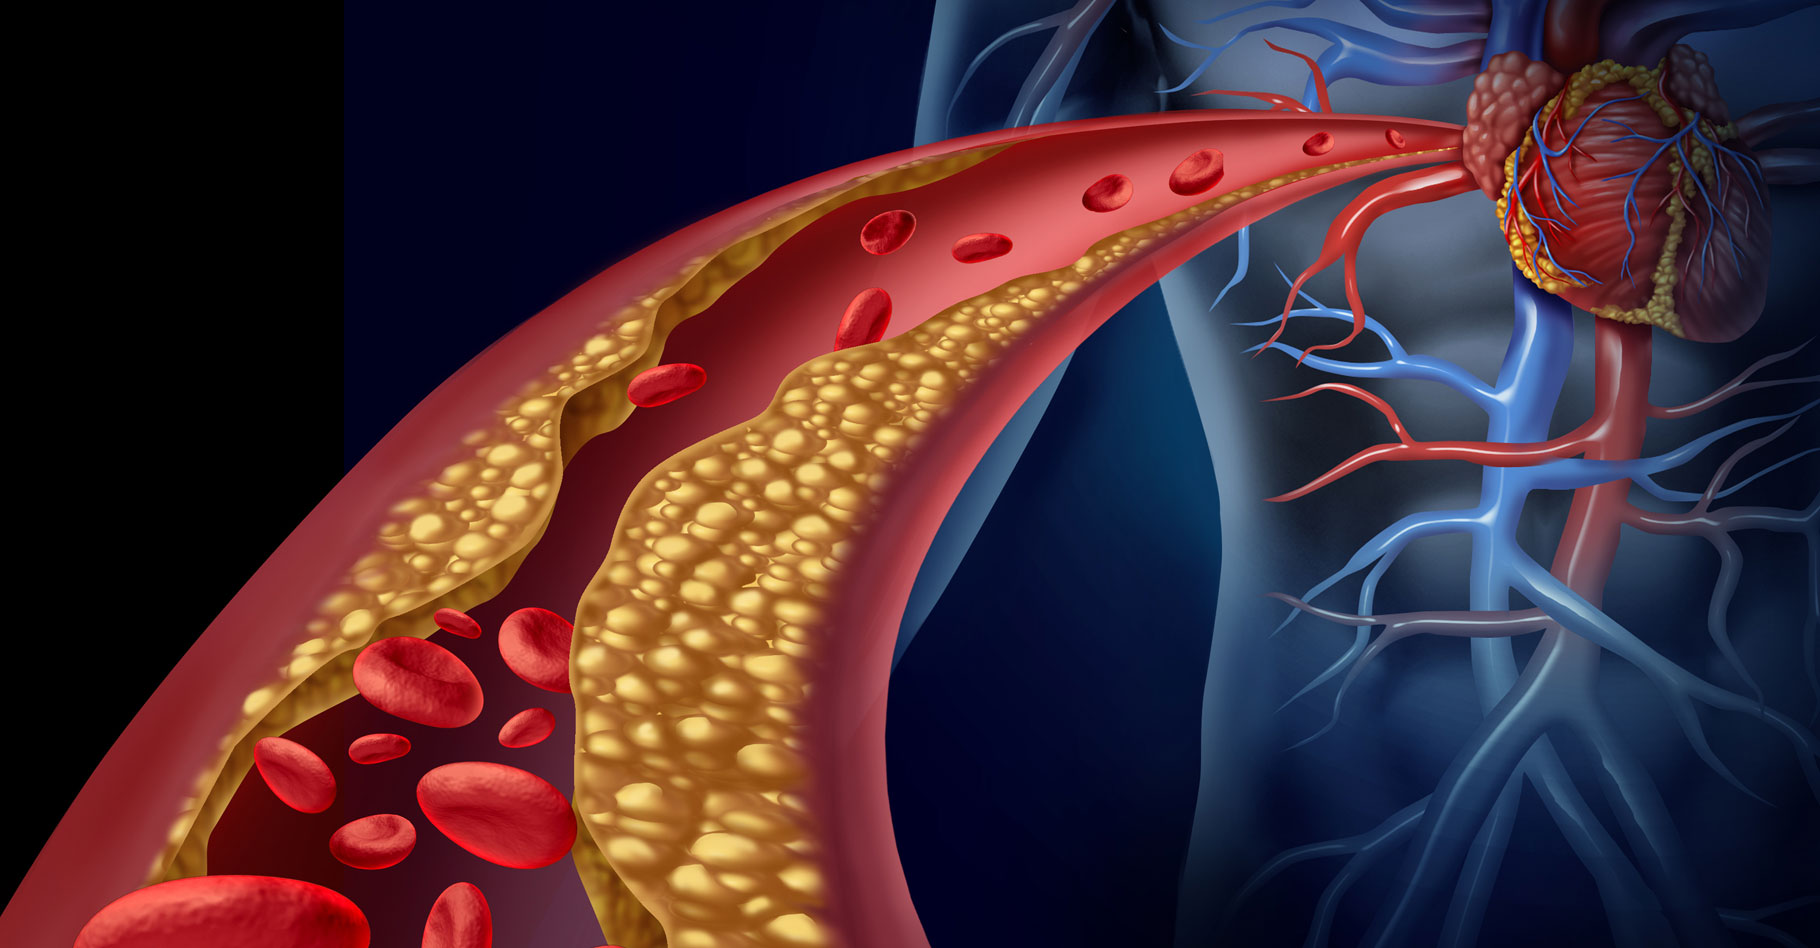 Taux de cholestérol : hypercholestérolémie et conséquences